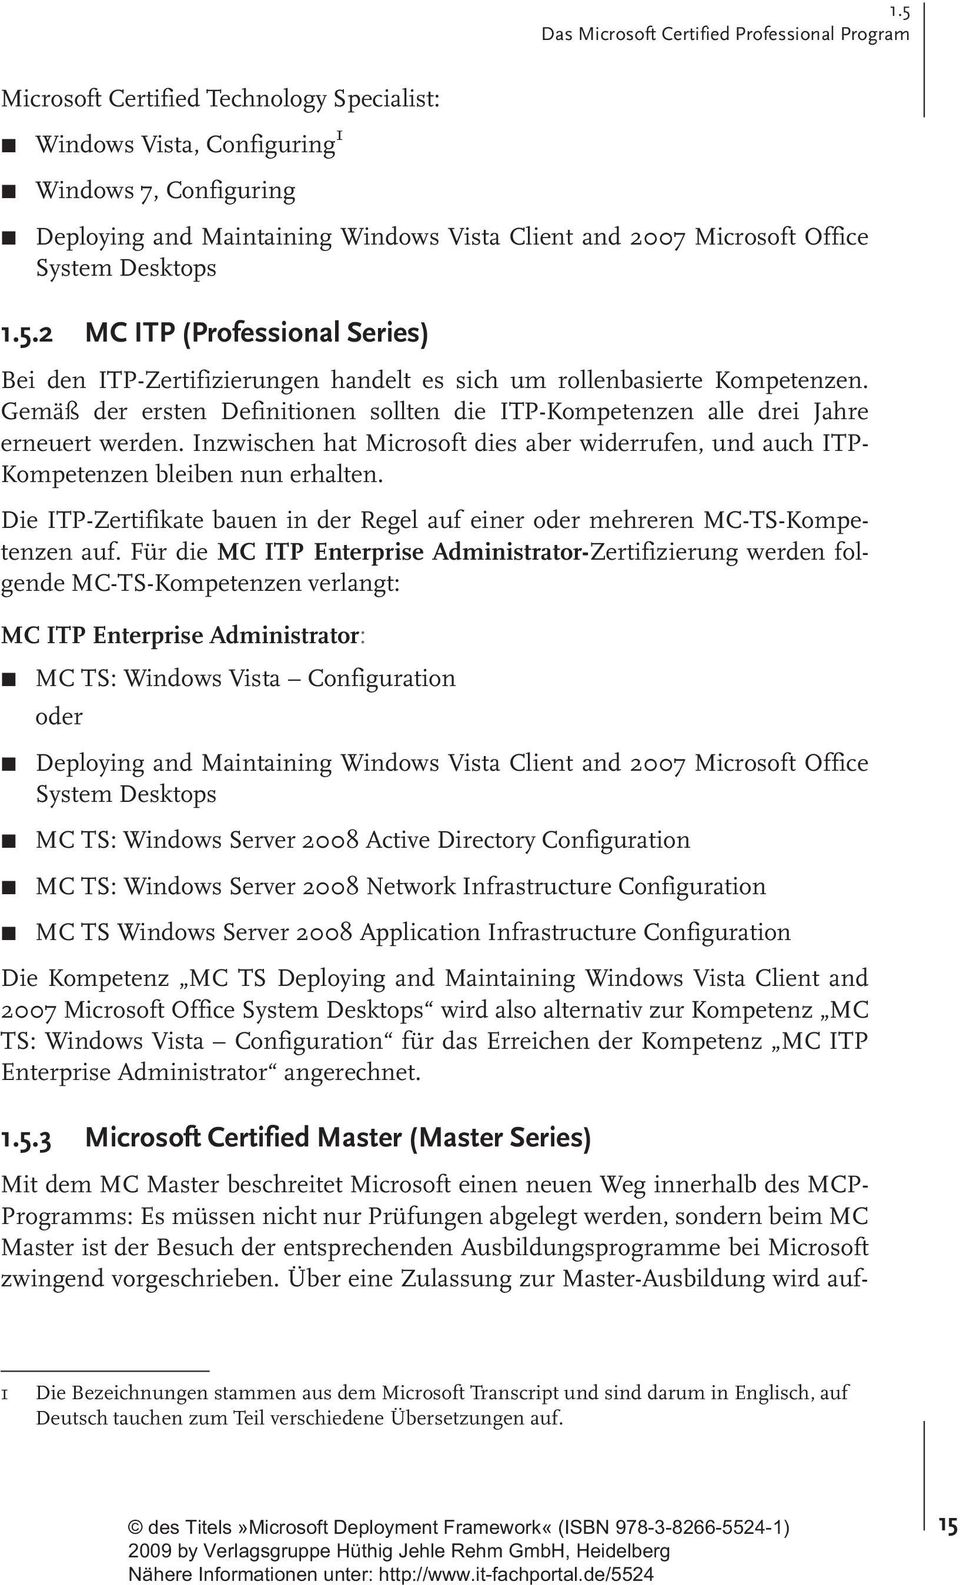 Gemäß der ersten Definitionen sollten die ITP-Kompetenzen alle drei Jahre erneuert werden. Inzwischen hat Microsoft dies aber widerrufen, und auch ITP- Kompetenzen bleiben nun erhalten.